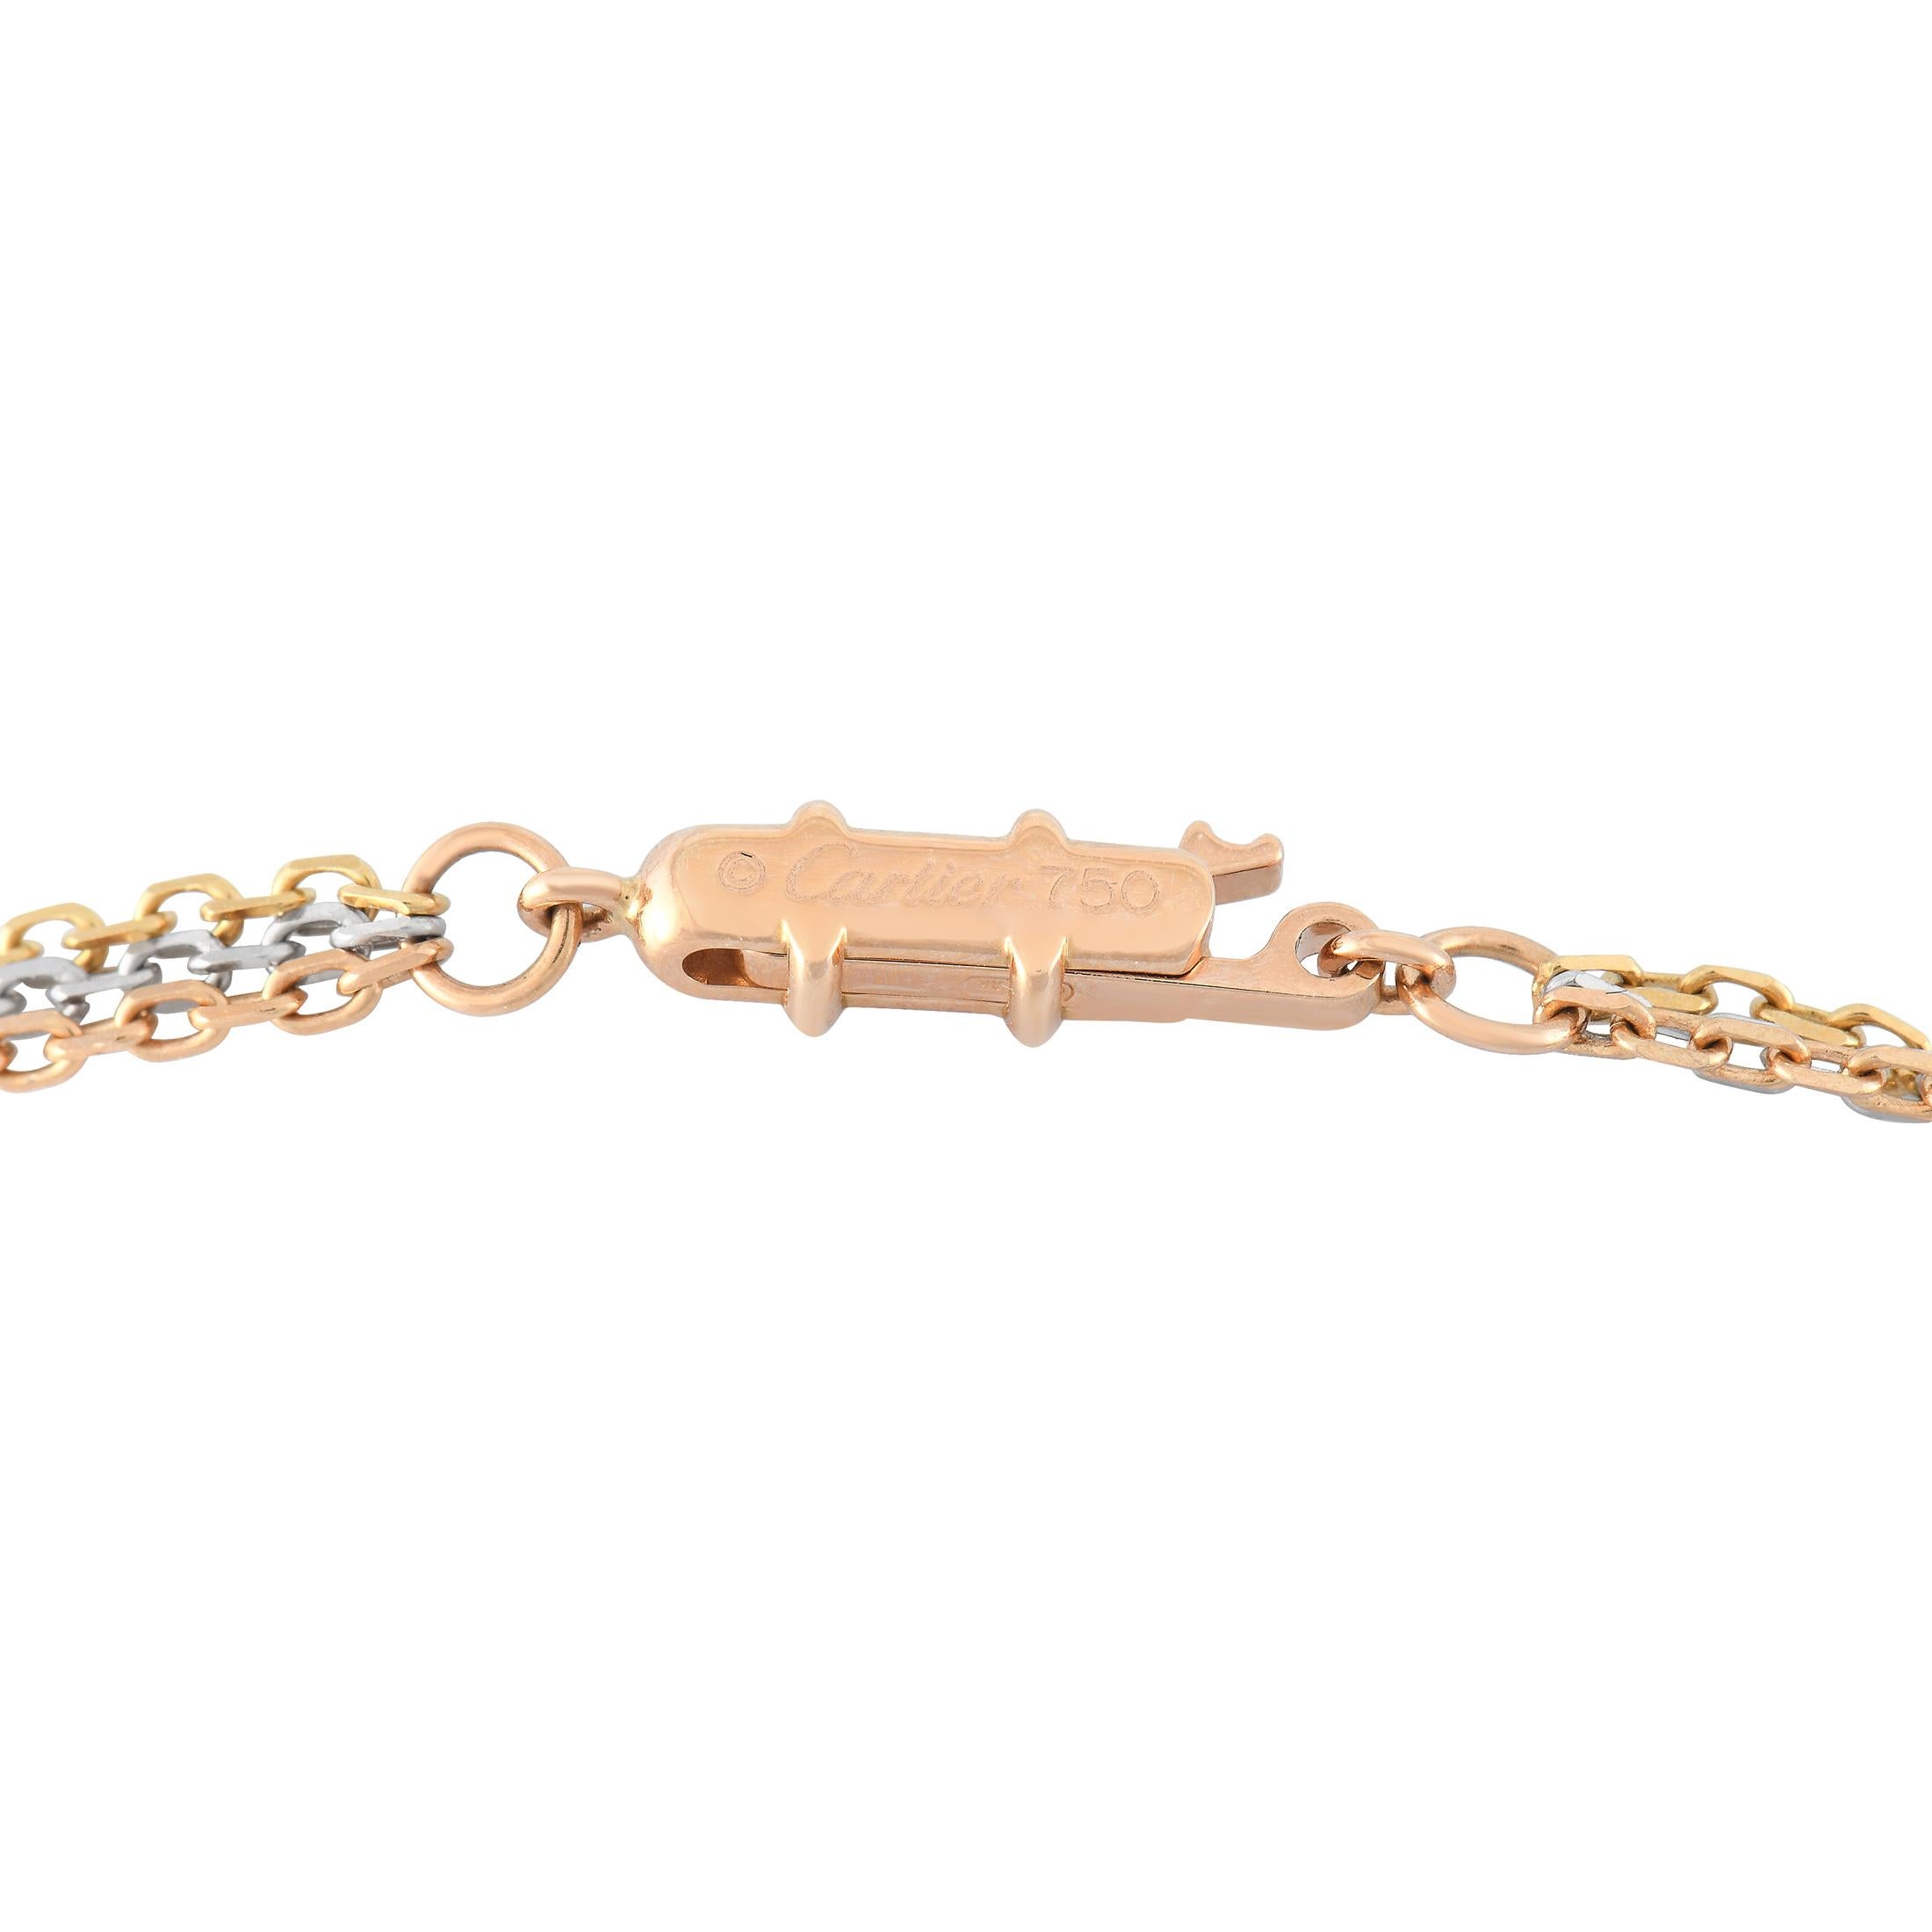 Diese Cartier Trinity Halskette ist einfach umwerfend. An einer 22 cm langen Kette hängt ein 1,75 cm großer, runder Anhänger. Er ist aus einer Kombination von 18 Karat Weißgold, 18 Karat Roségold und 18 Karat Gelbgold gefertigt. Auf dem Weißgoldreif